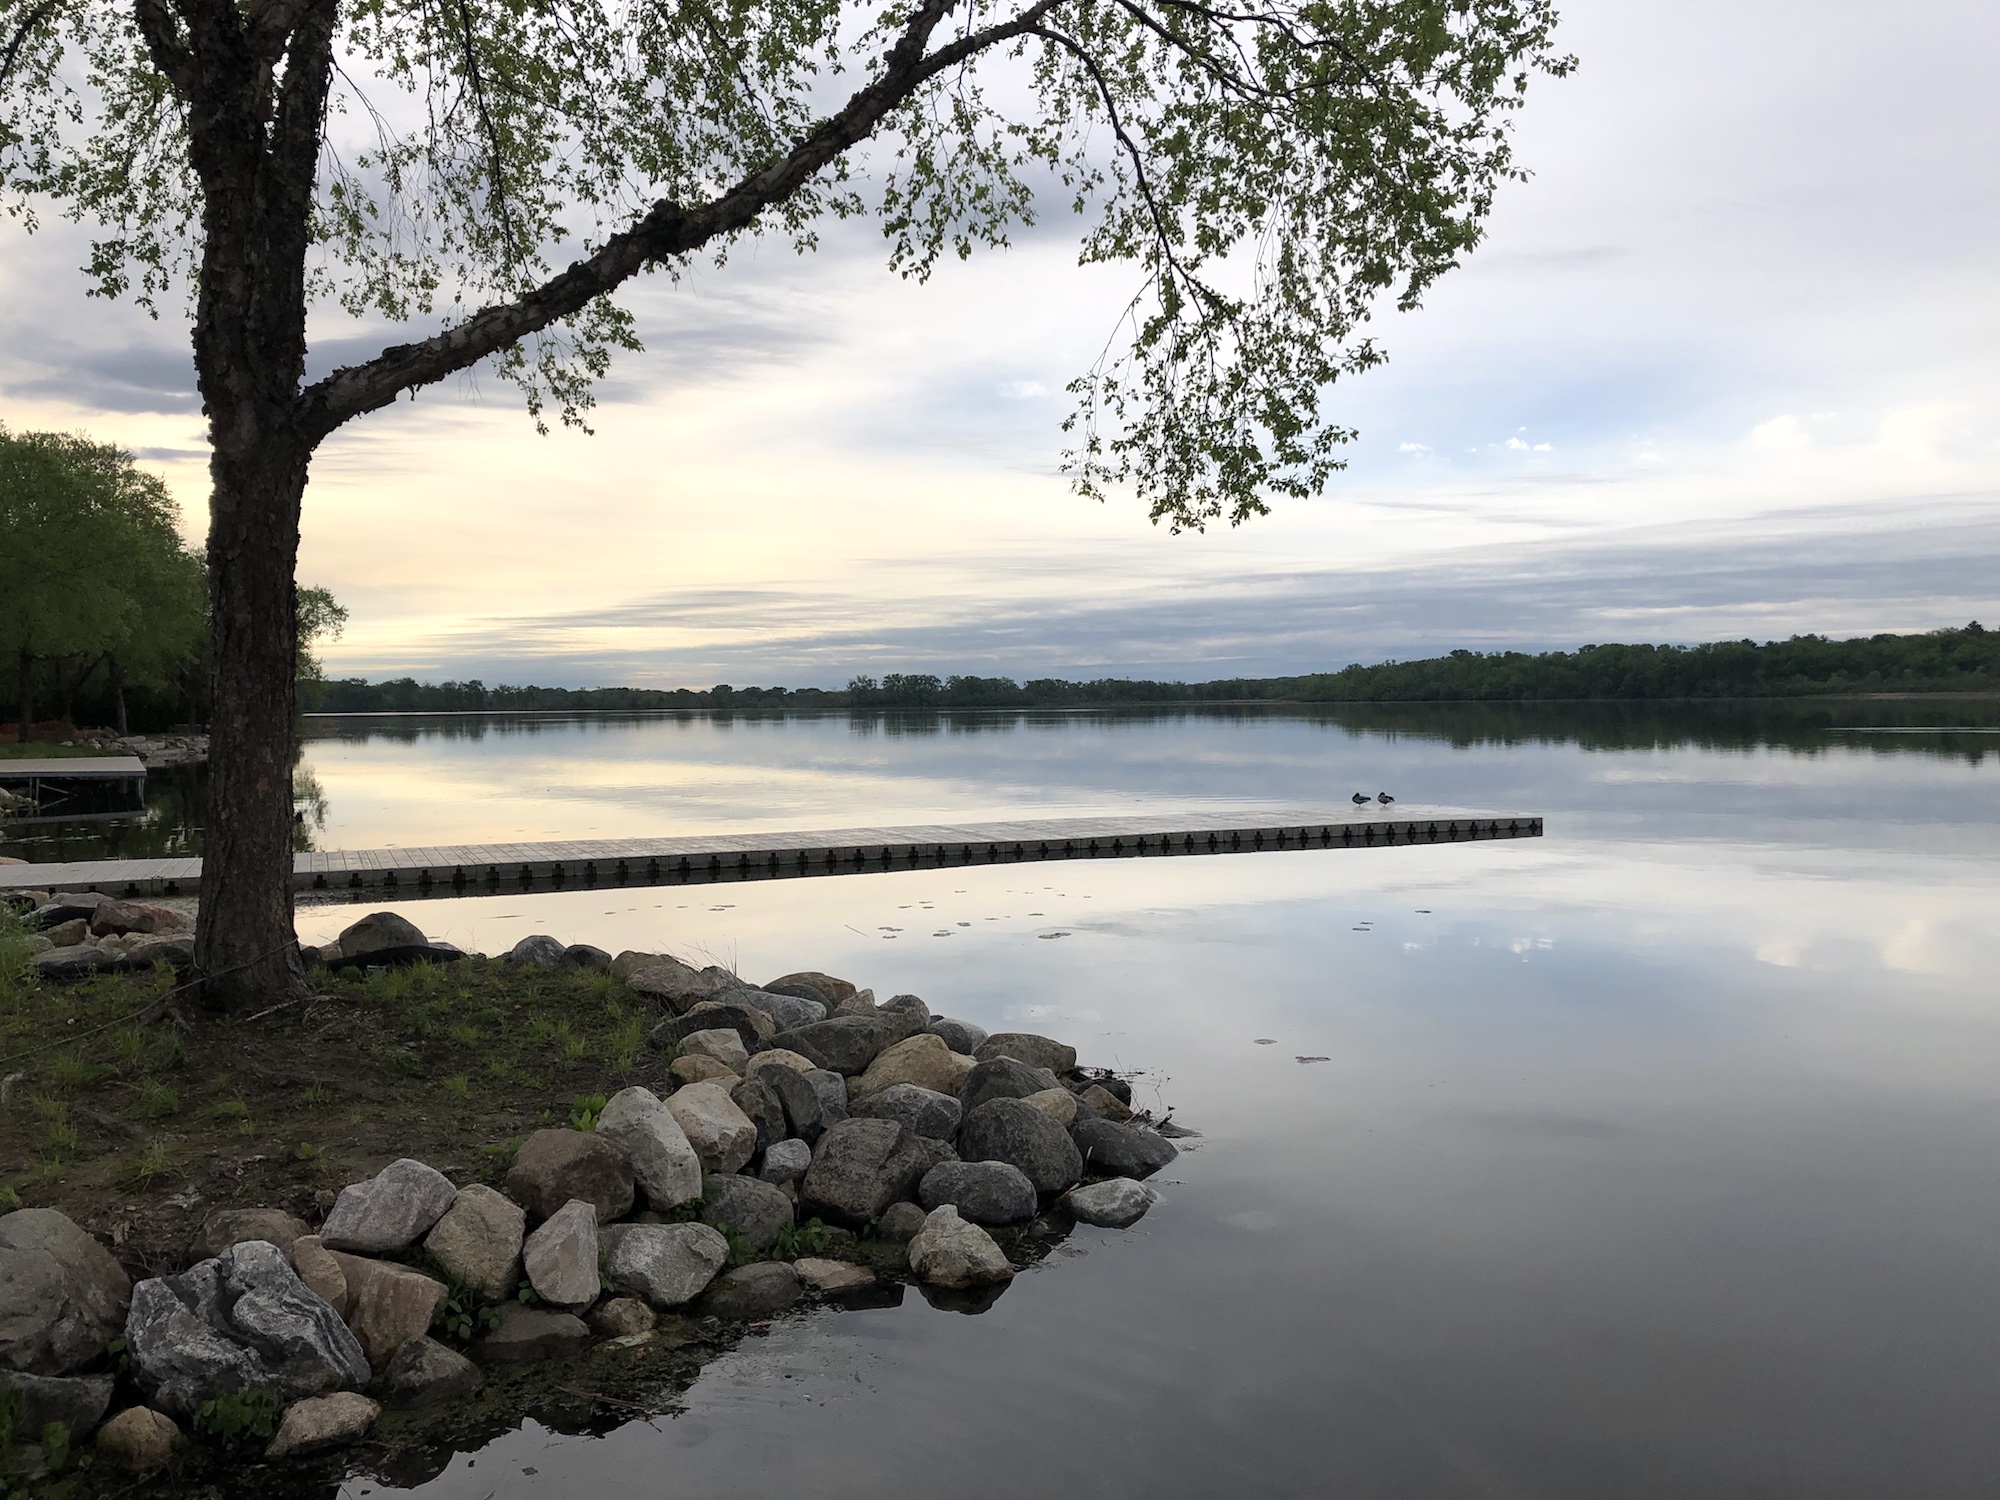 Lake Wingra on May 26, 2019.